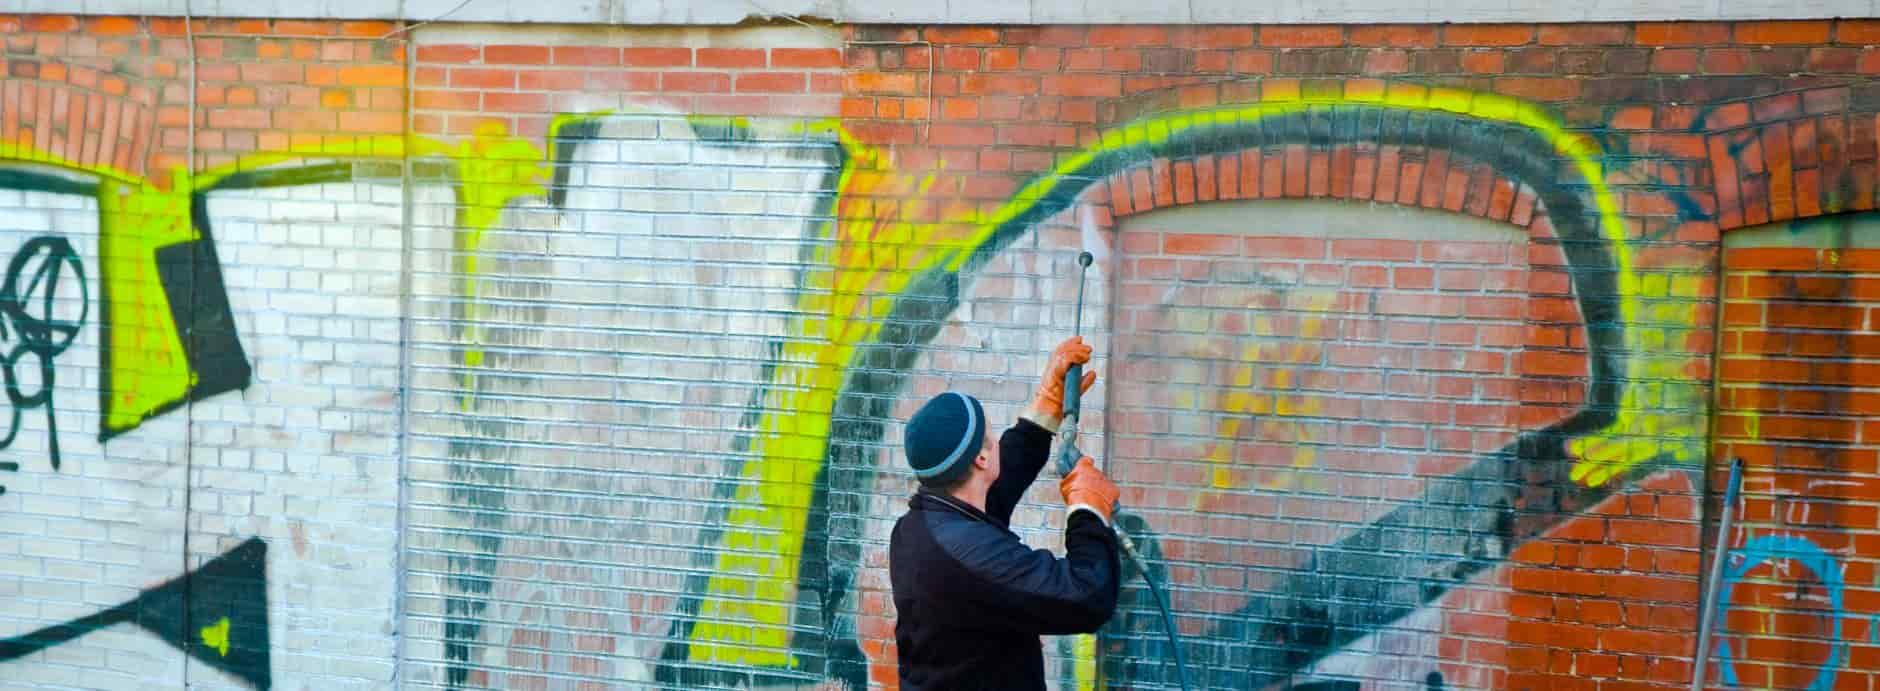 Graffiti Removal in Wingate